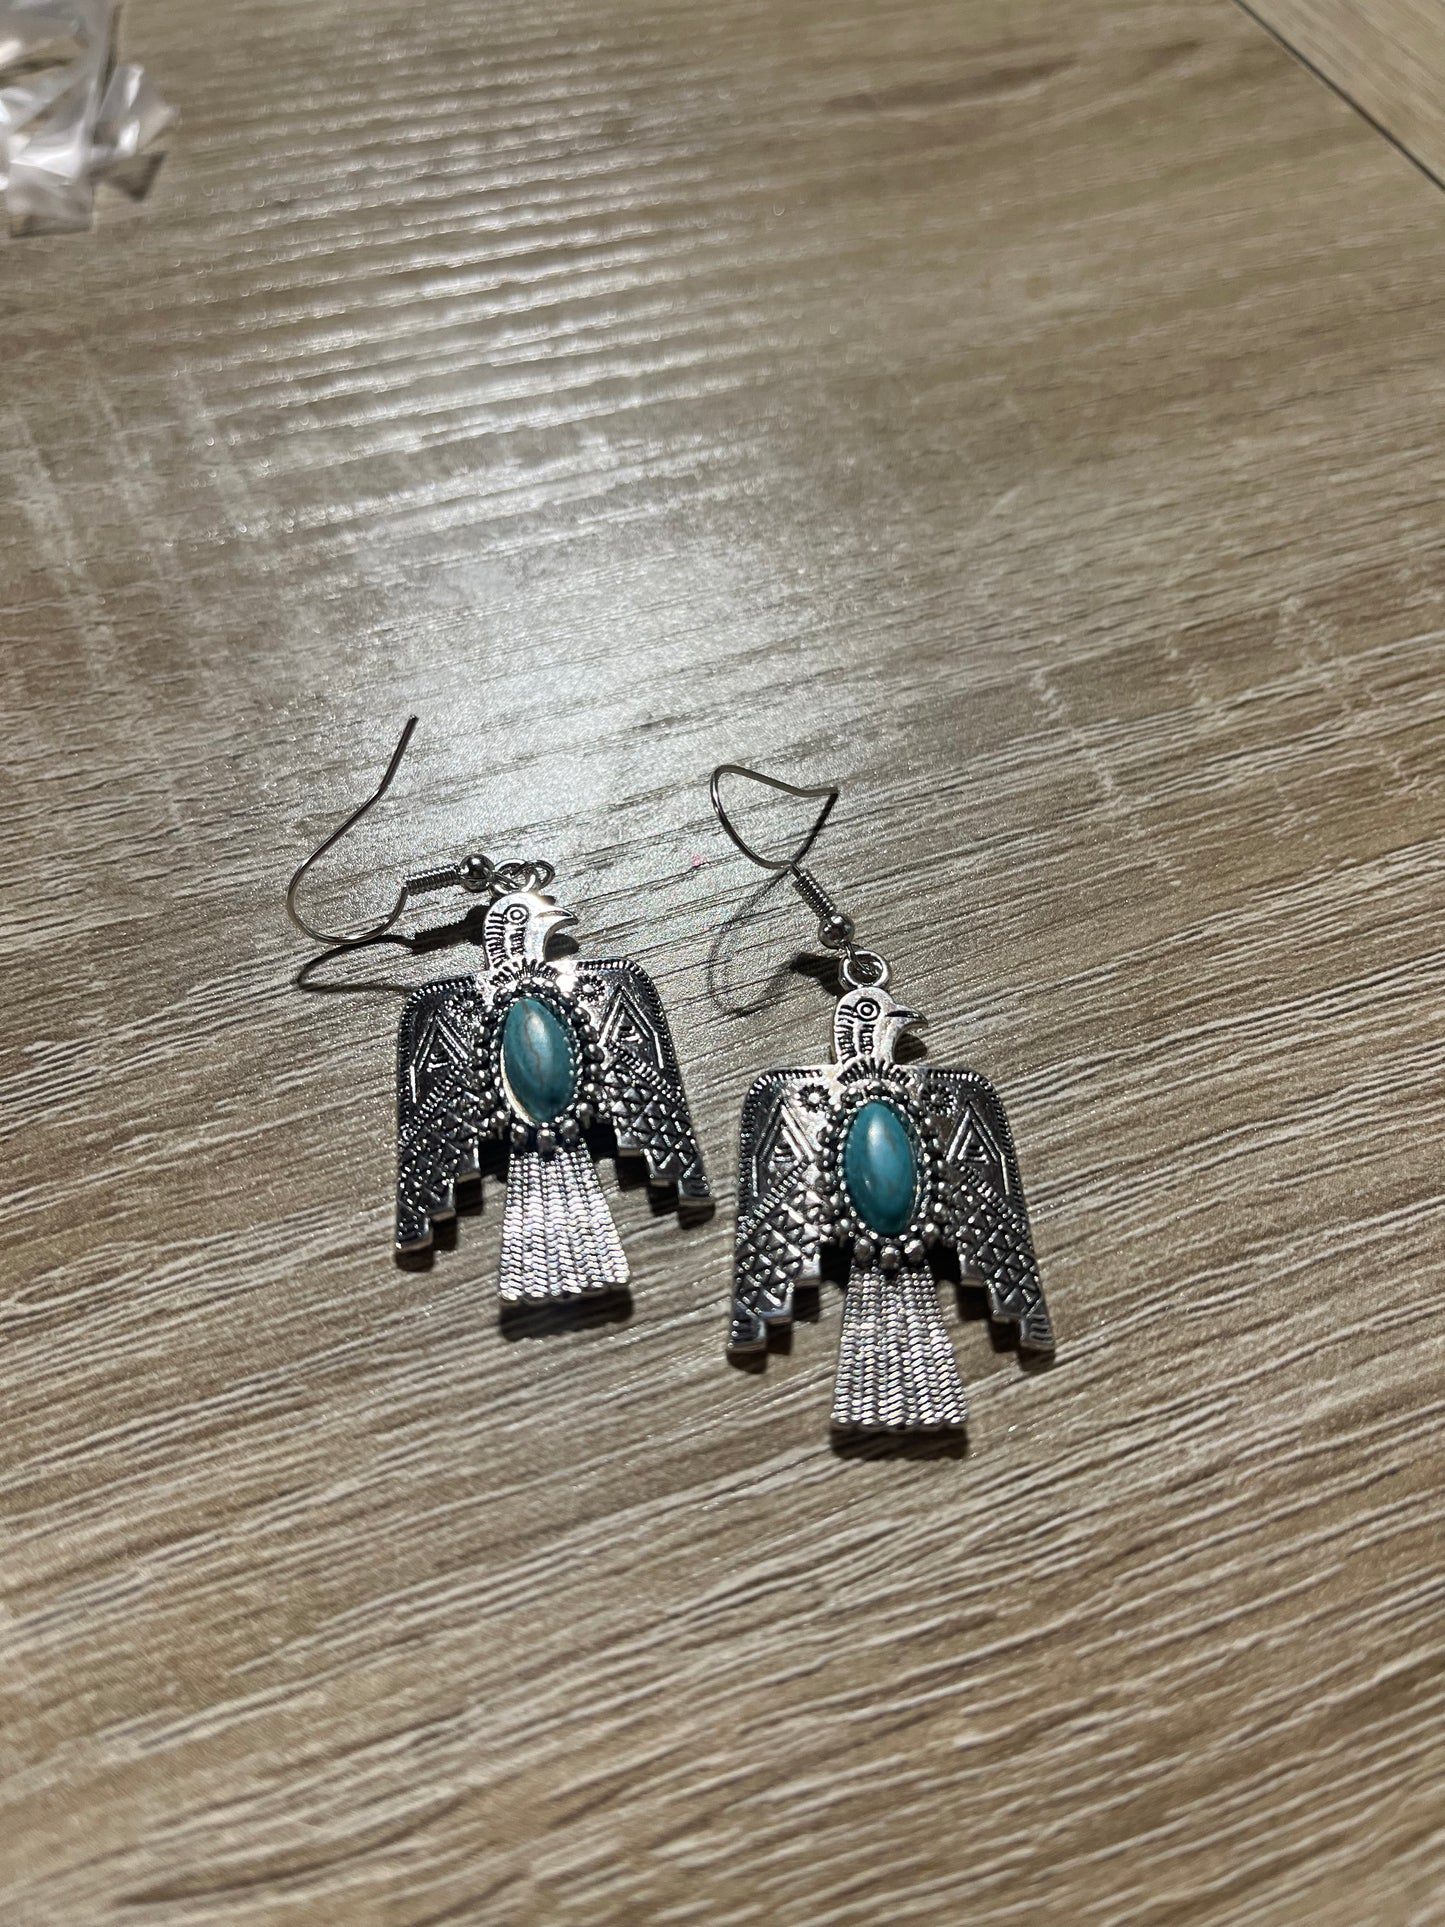 Bird earrings